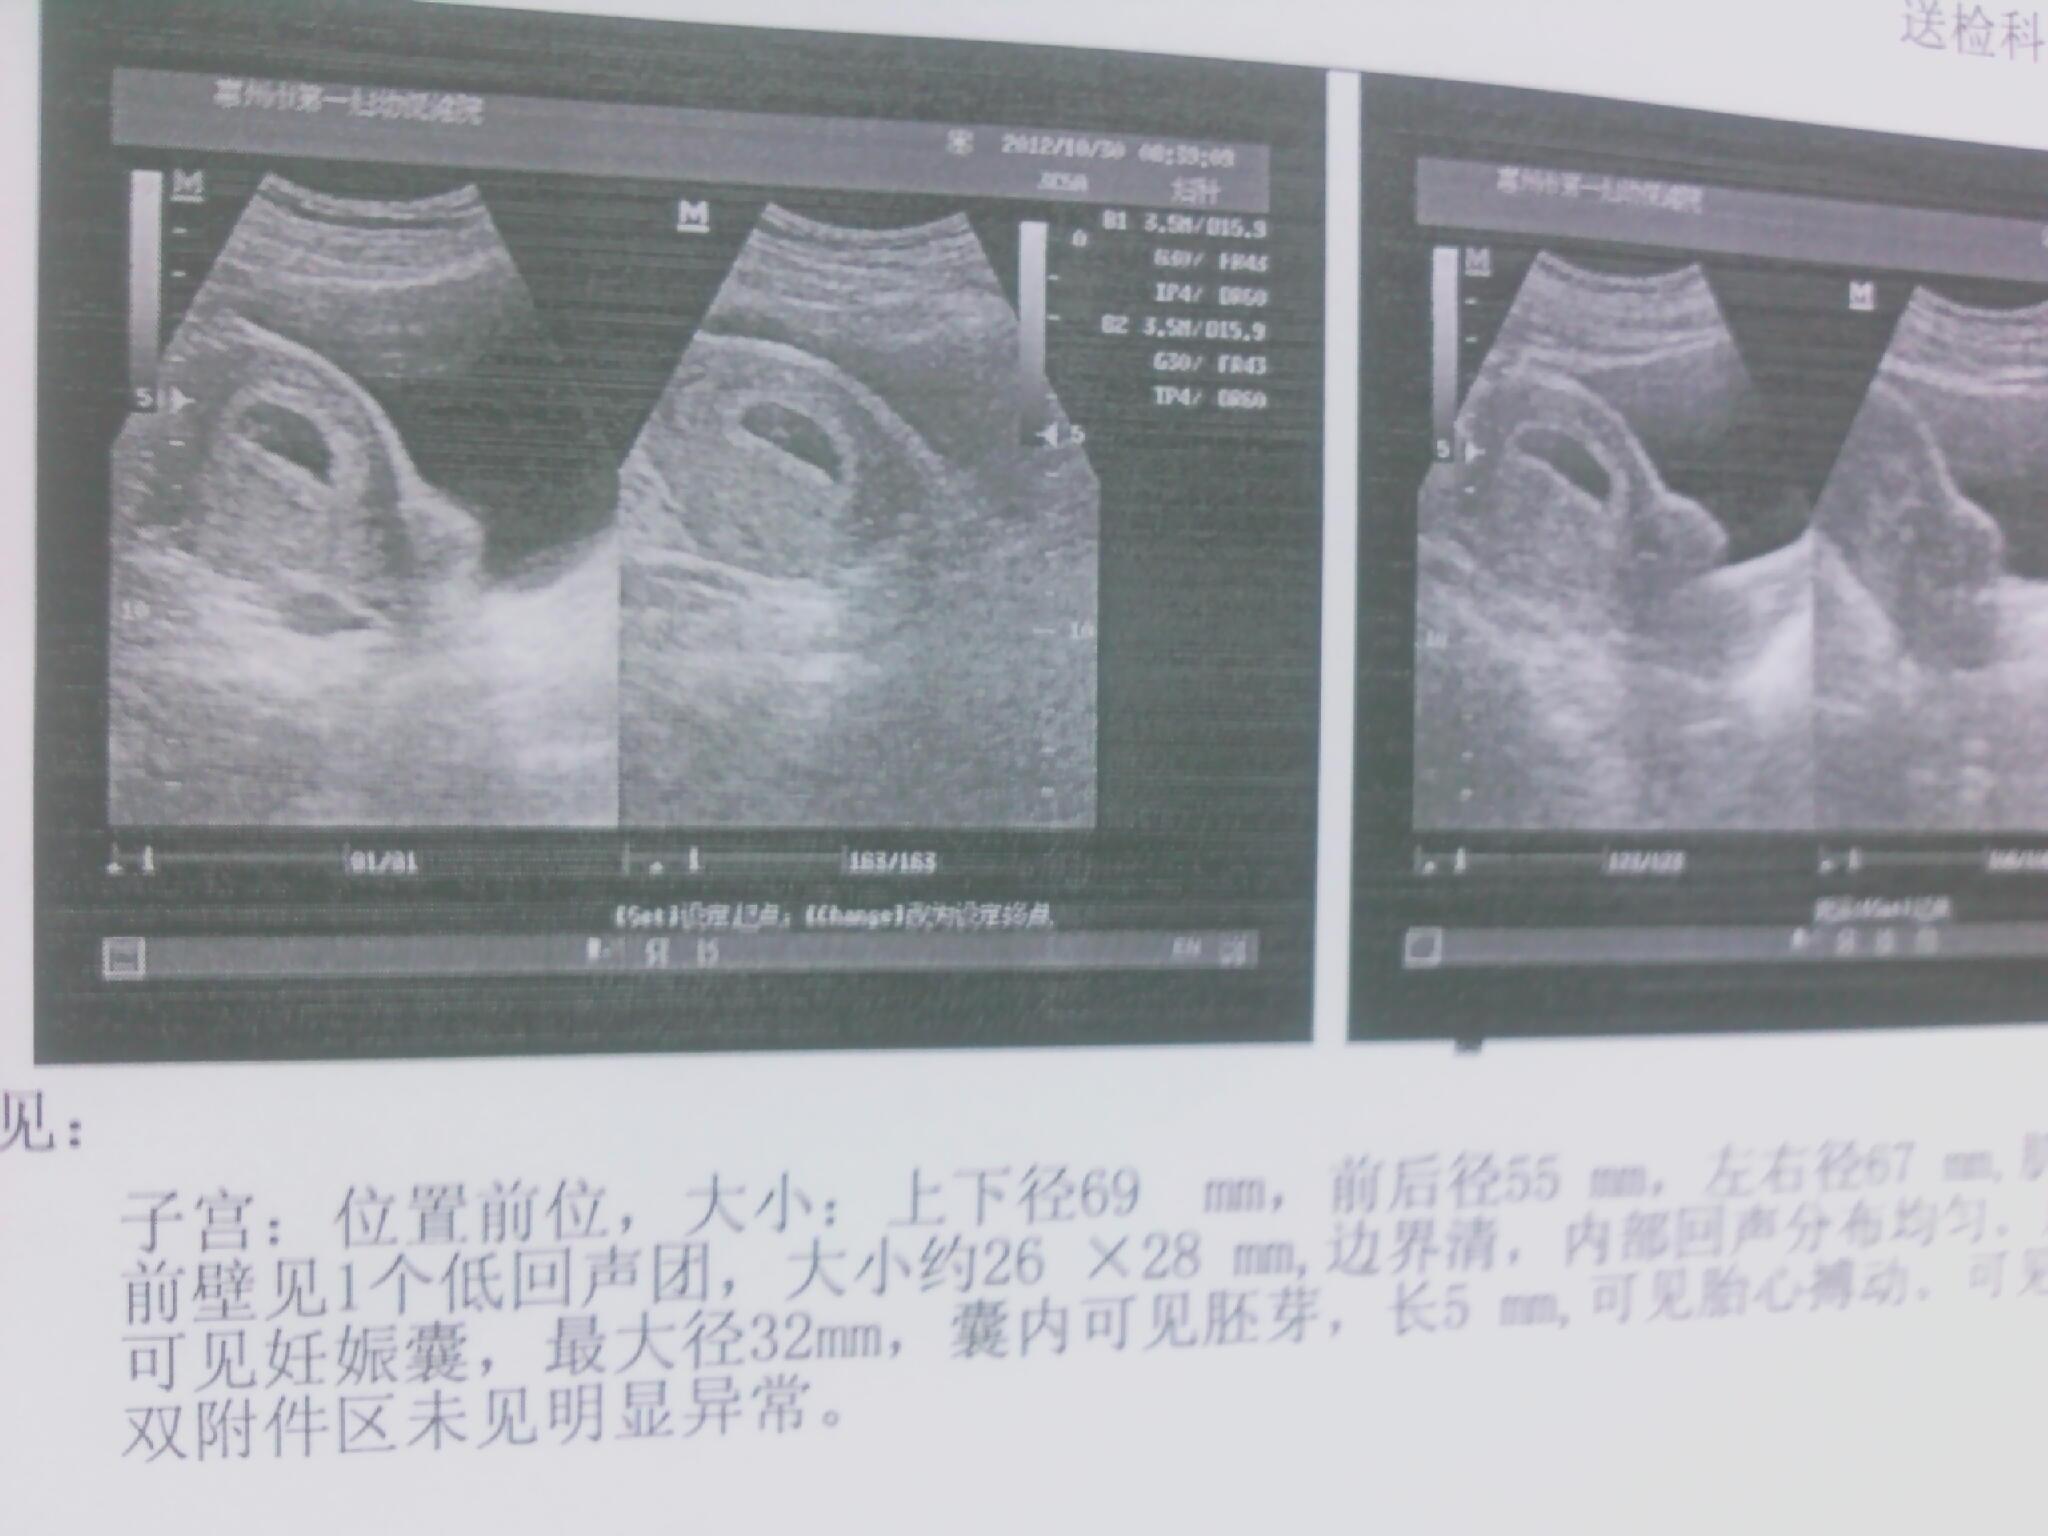 六个月孕妇肚子多大 请看美女六个月怀孕写真-1-6TU